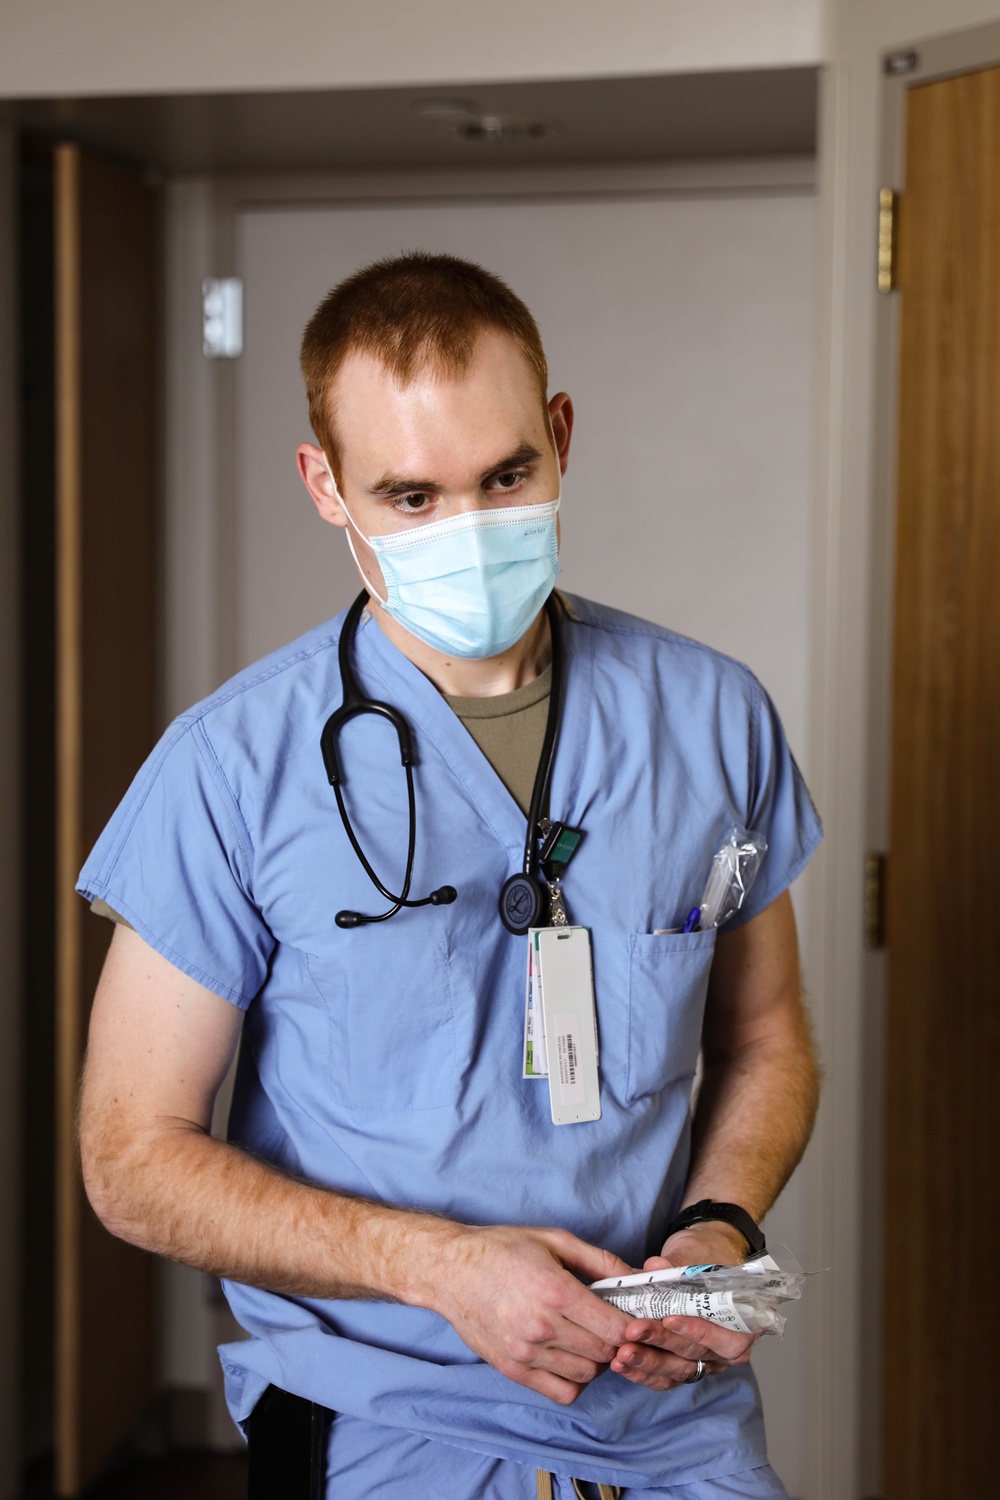 U.S. Air Force nurse prepares for patient care